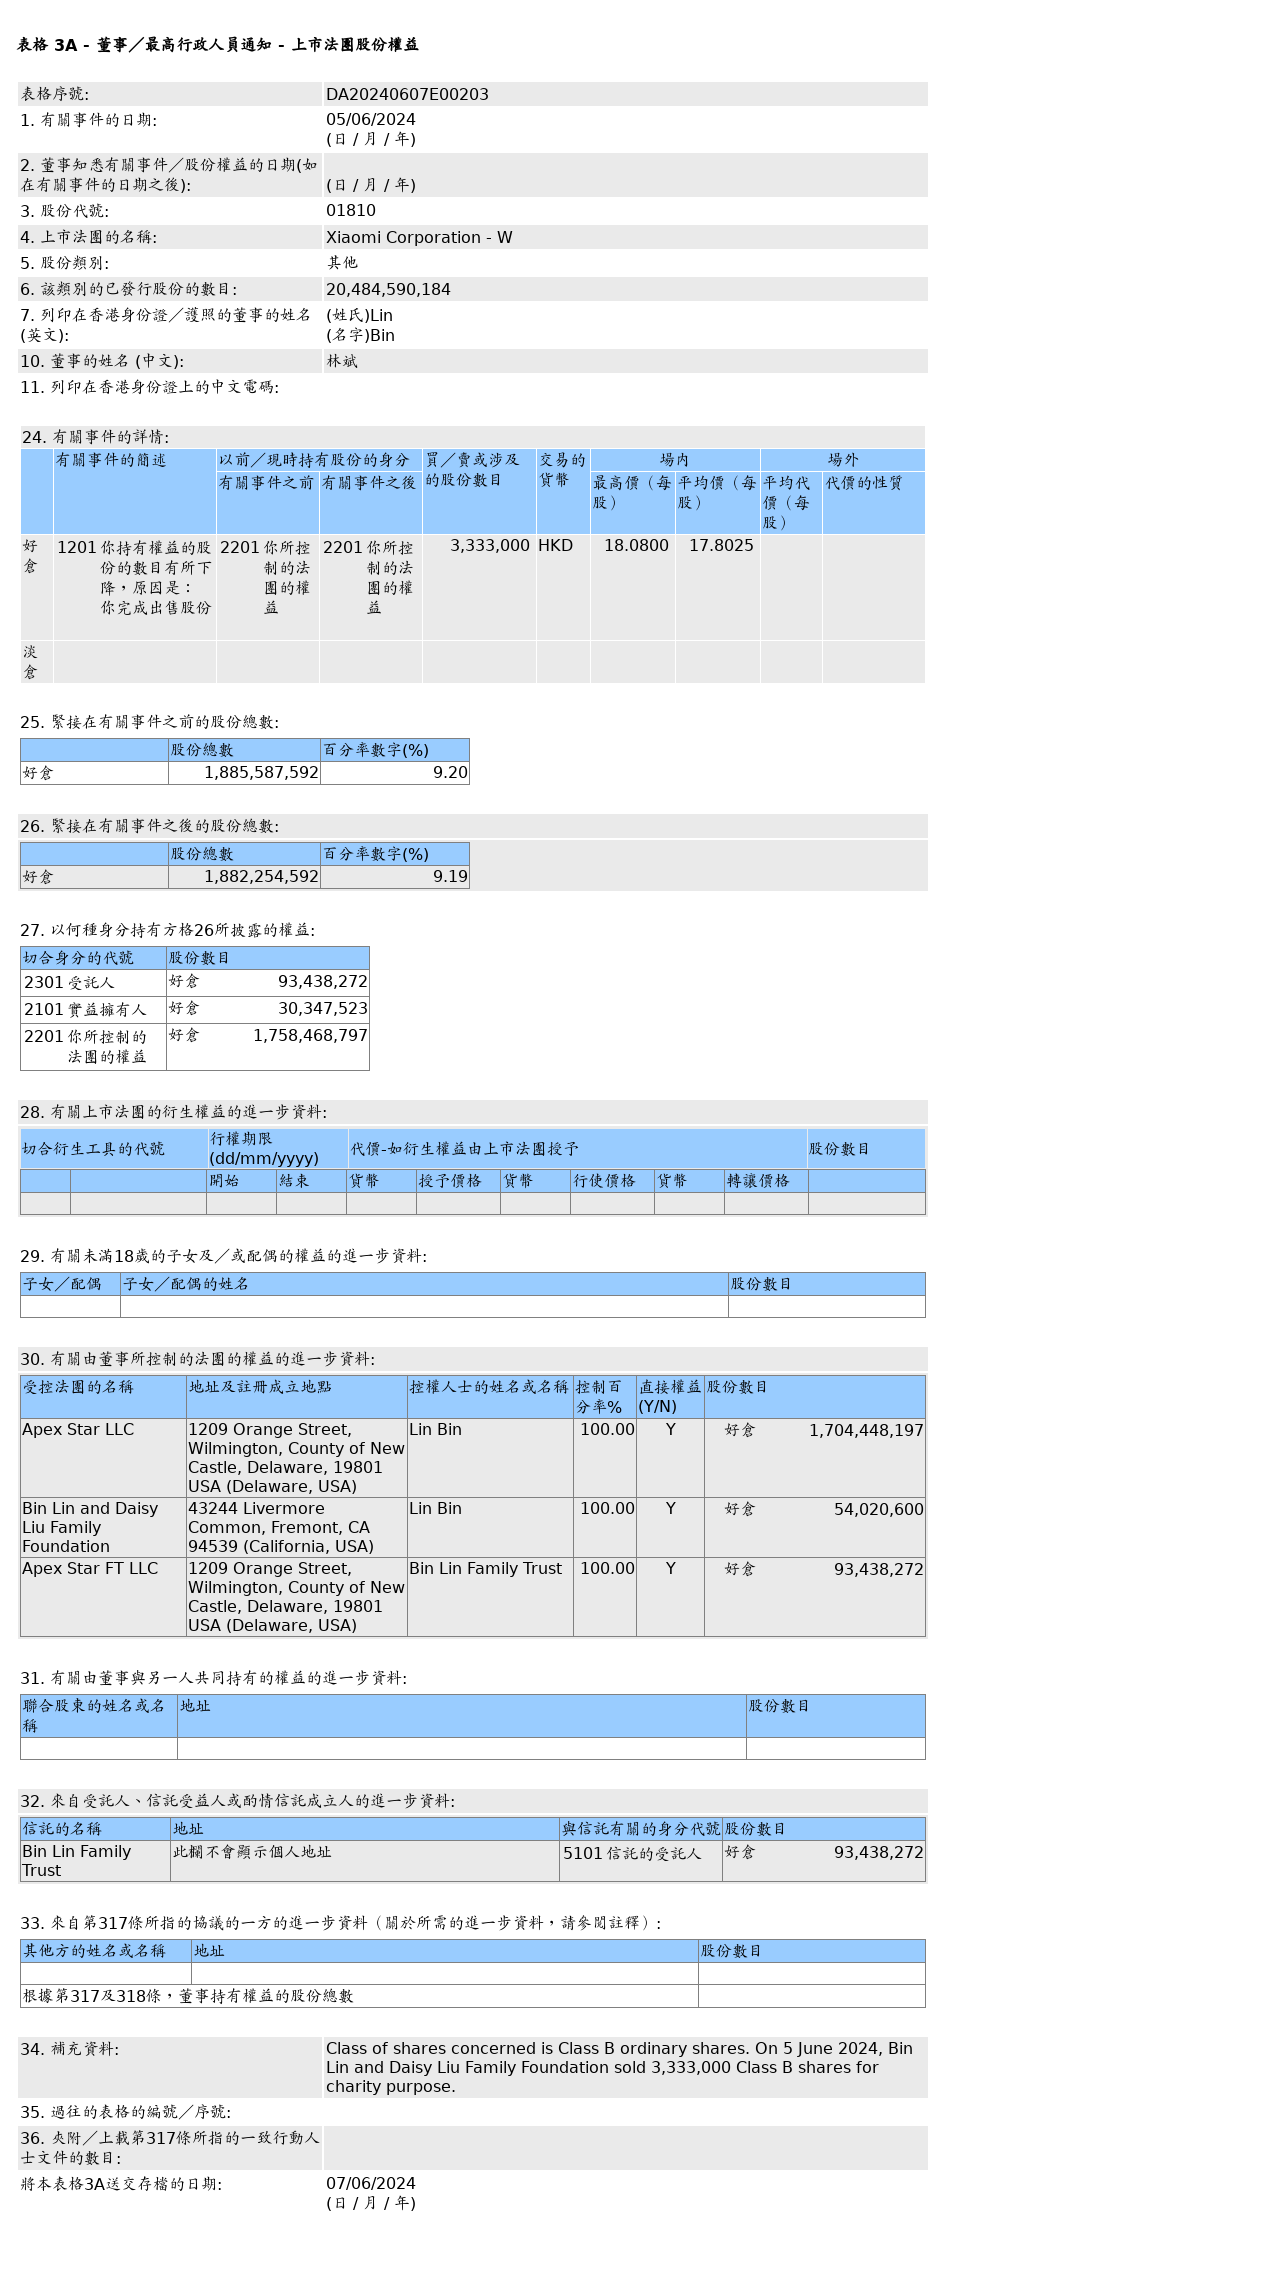 林斌售出小米集团-W(01810.HK)333.3万股其他股股份，价值约5,933.57万港元